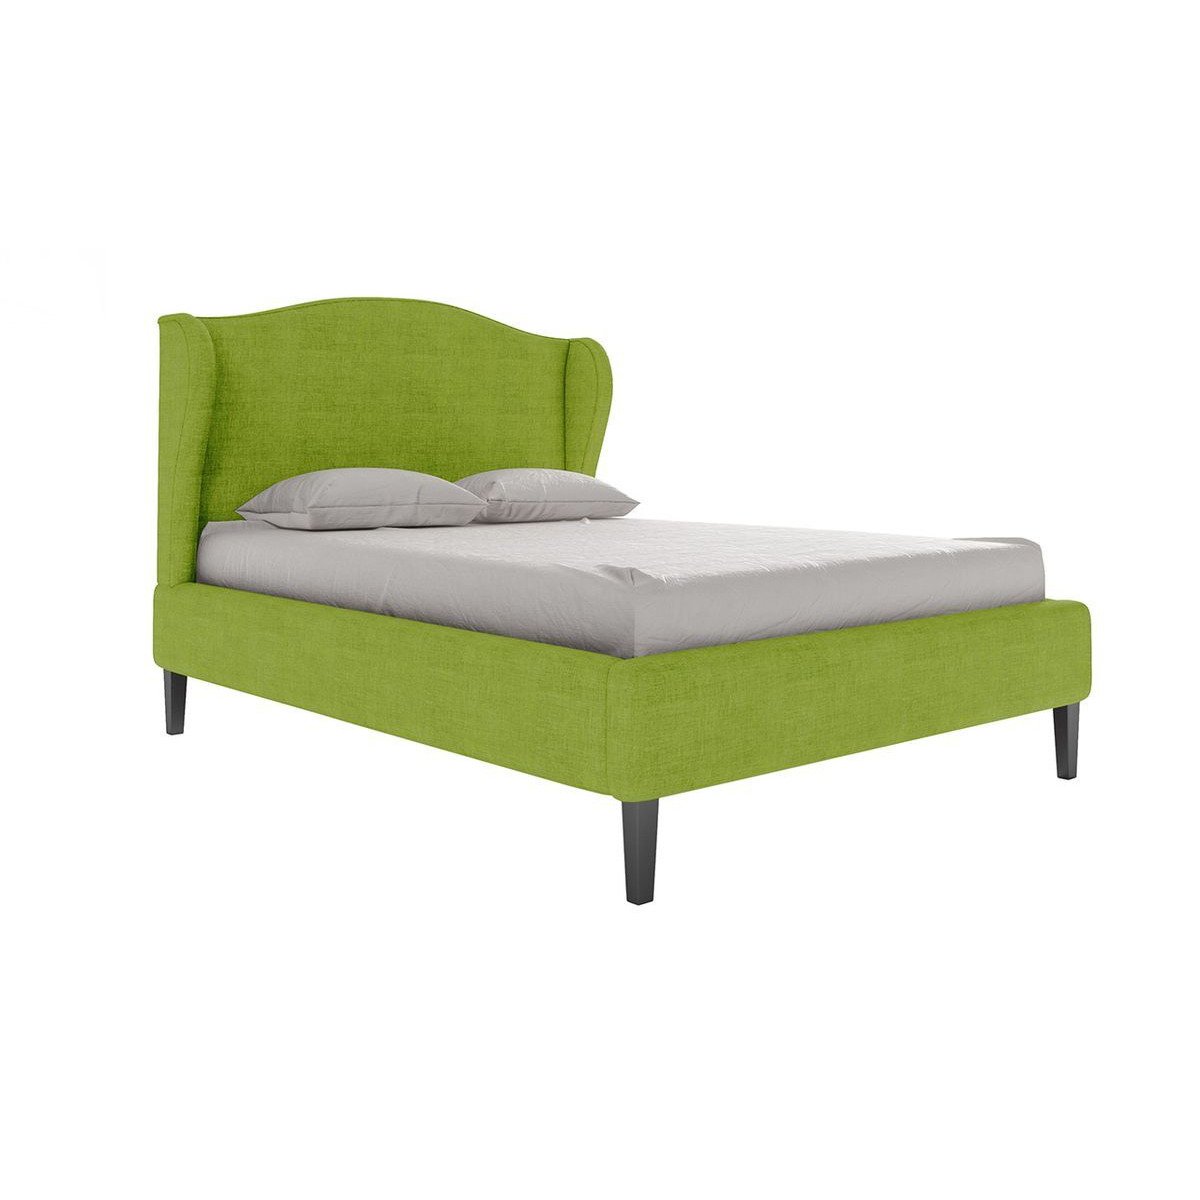 Hope Upholstered Bed Frame, lime - image 1